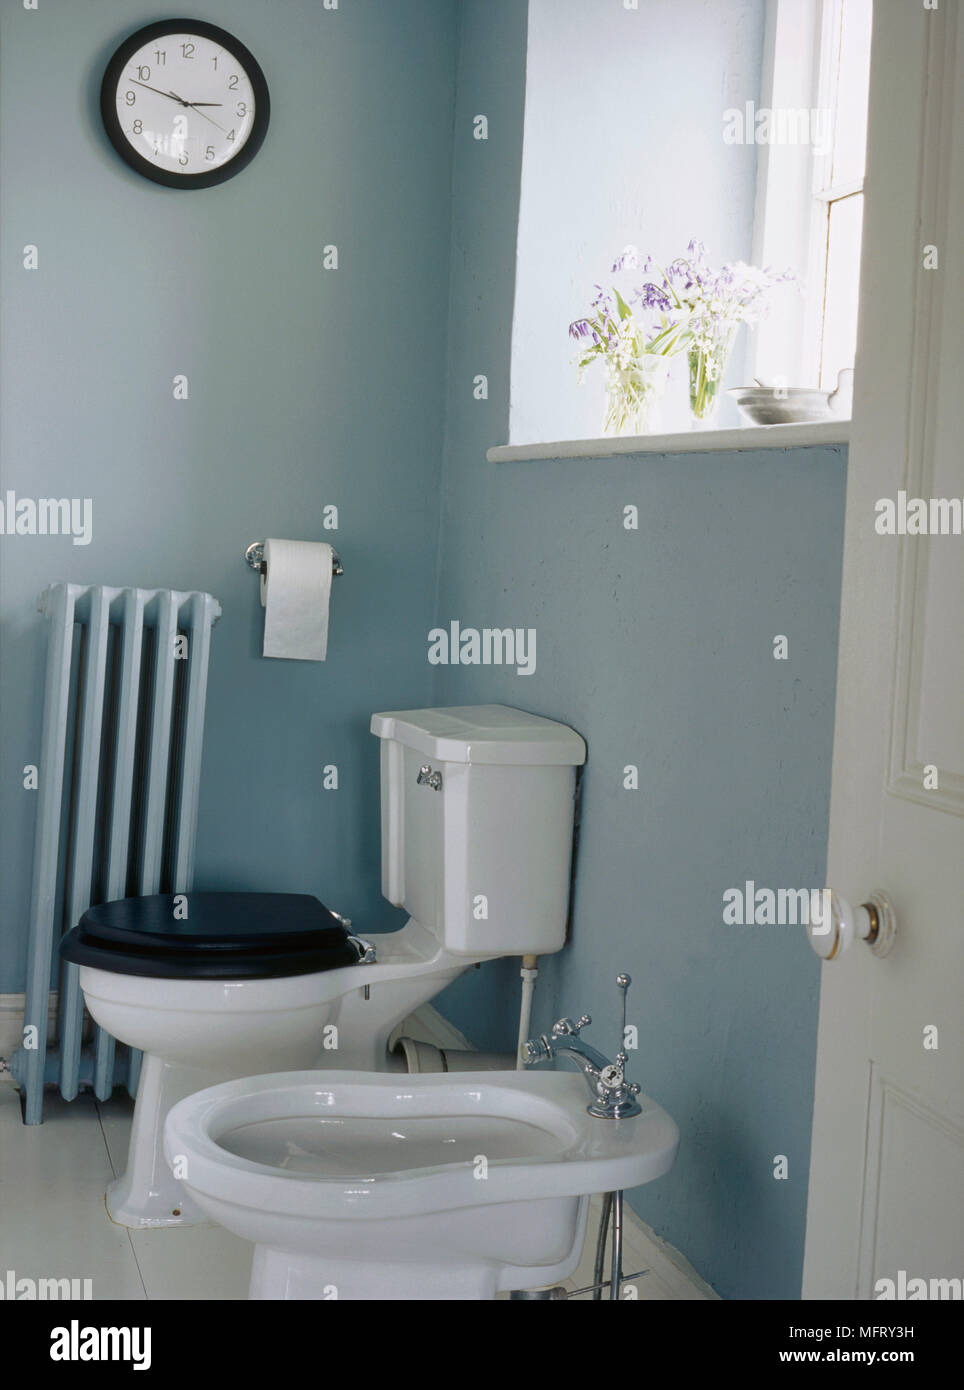 Ein Detail einer blauen Land Badezimmer traditionelle wc und bidet Altmodische kühler Tür öffnen Stockfoto